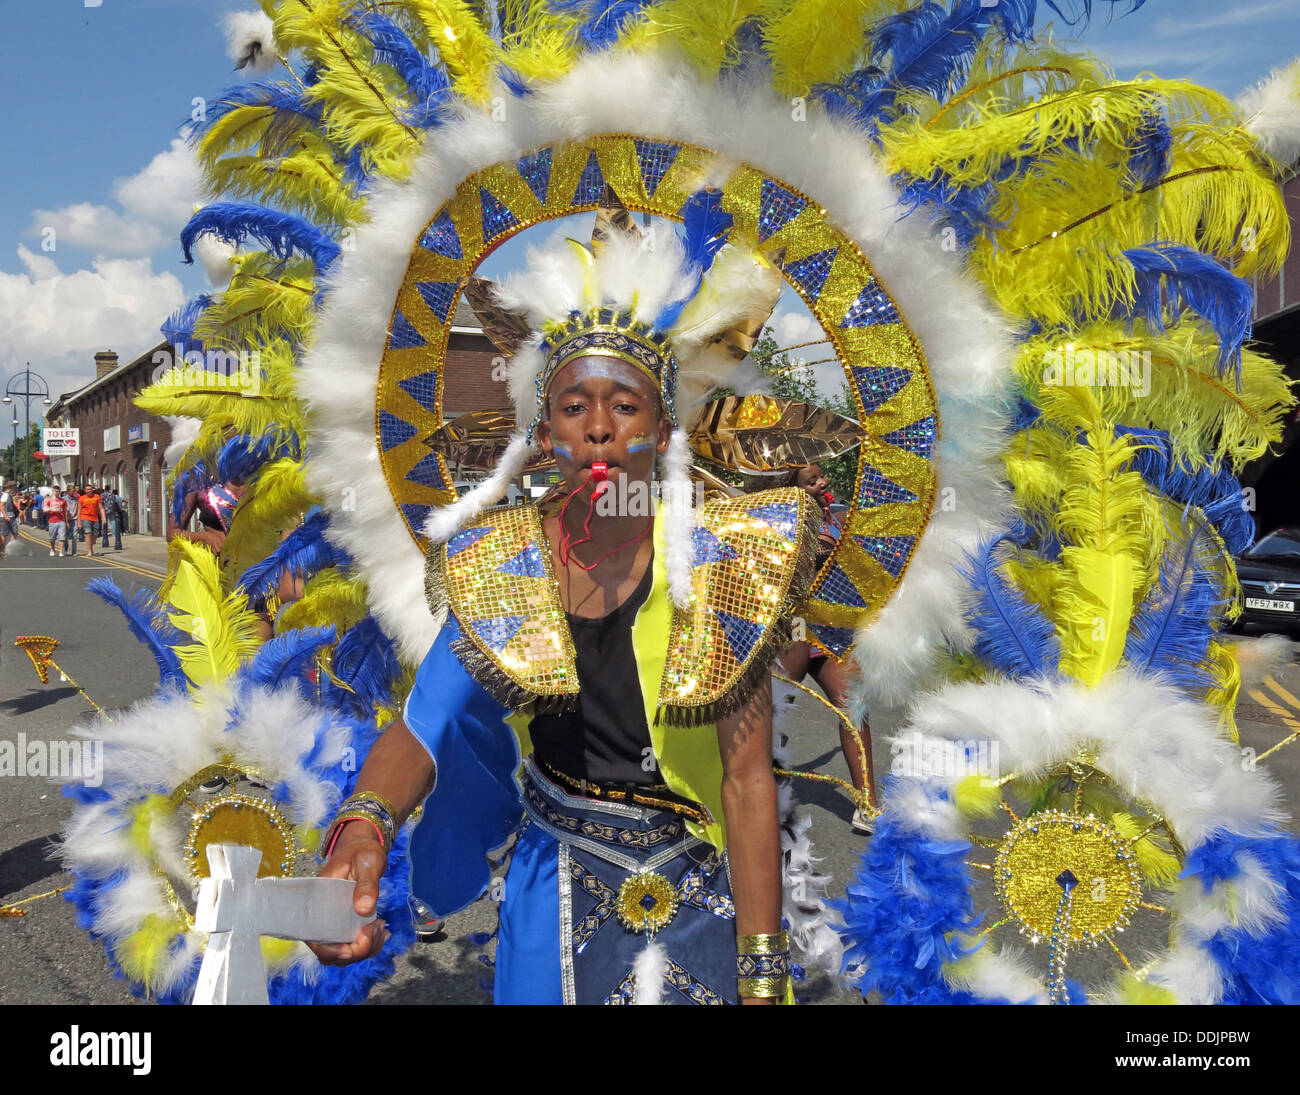 Danseuse en costume en bleu jaune de Huddersfield Carnival parade 2013 fête de rue Africains des Caraïbes Banque D'Images